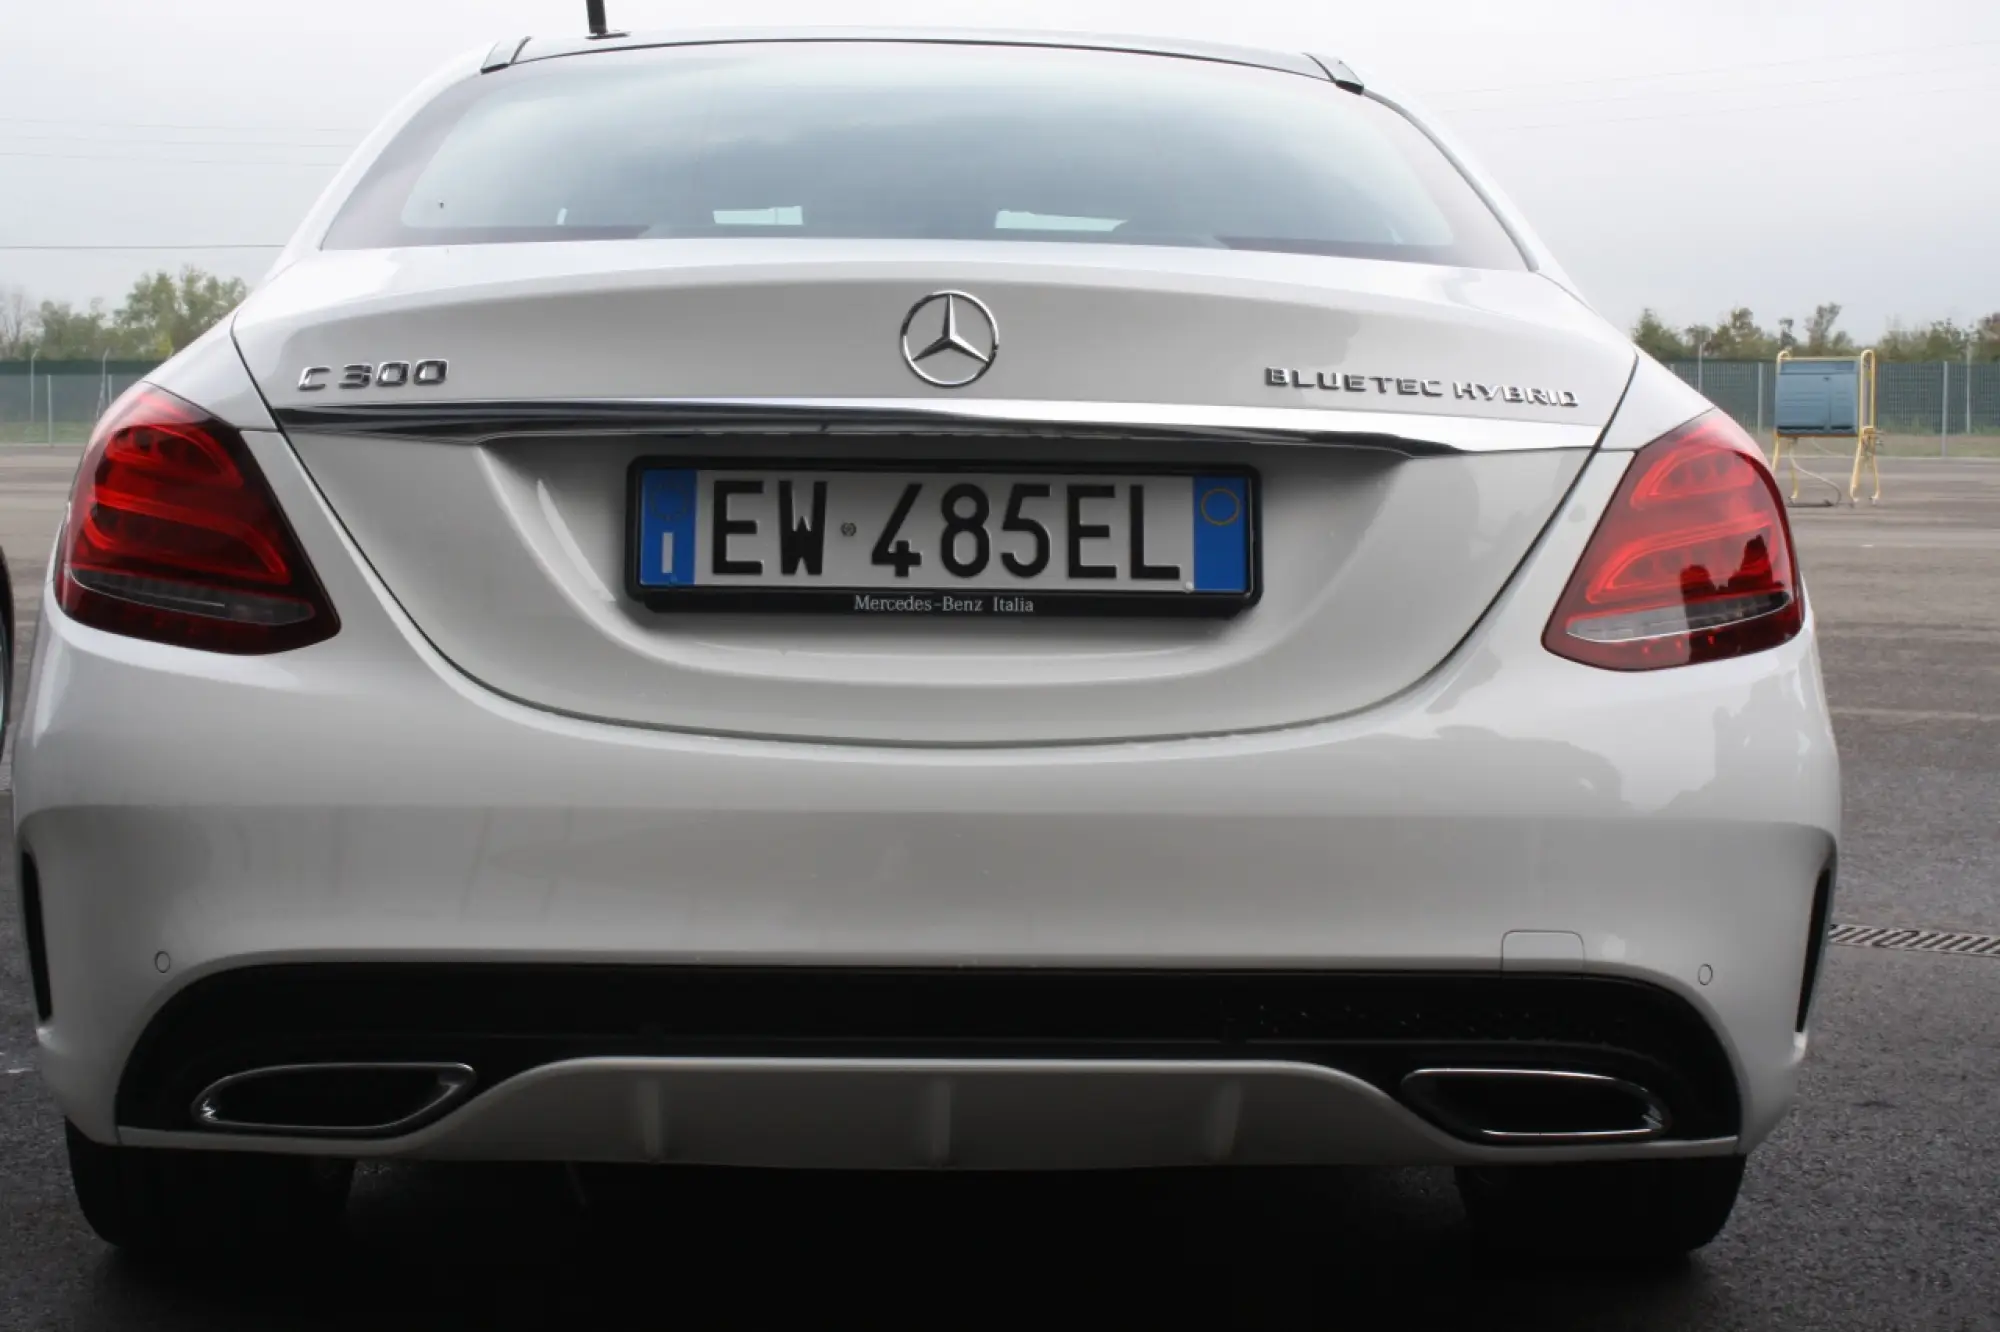 Mercedes-Benz Classe C Hybrid - primo contatto (2014) - 36